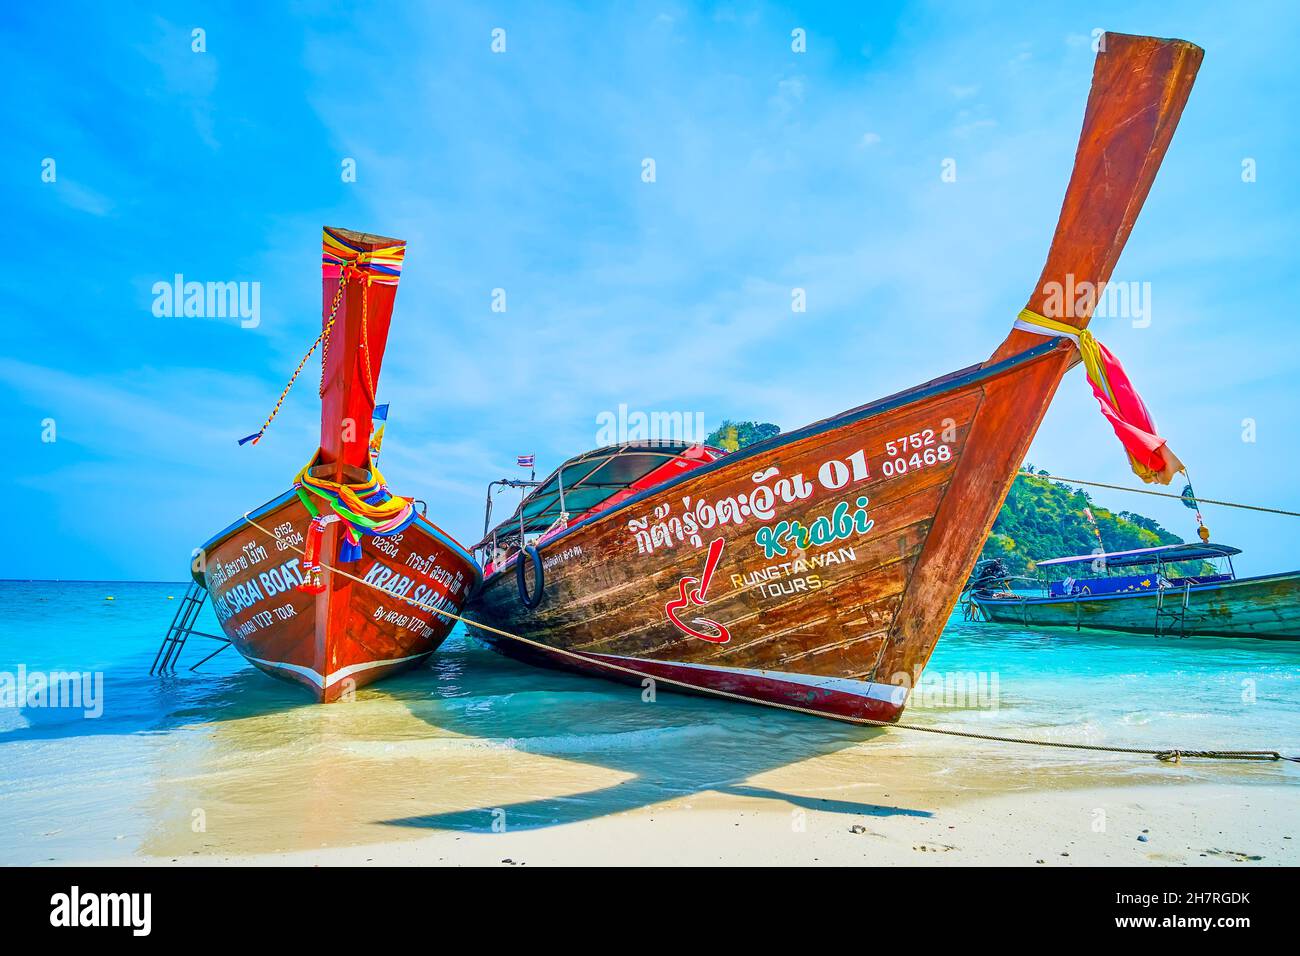 Le barche a coda lunga in legno Thai sono un trasporto turistico popolare, che utilizza per brevi viaggi in mare intorno alle isole vicine, Ko Mor nella regione di Krabi, Thailandia Foto Stock